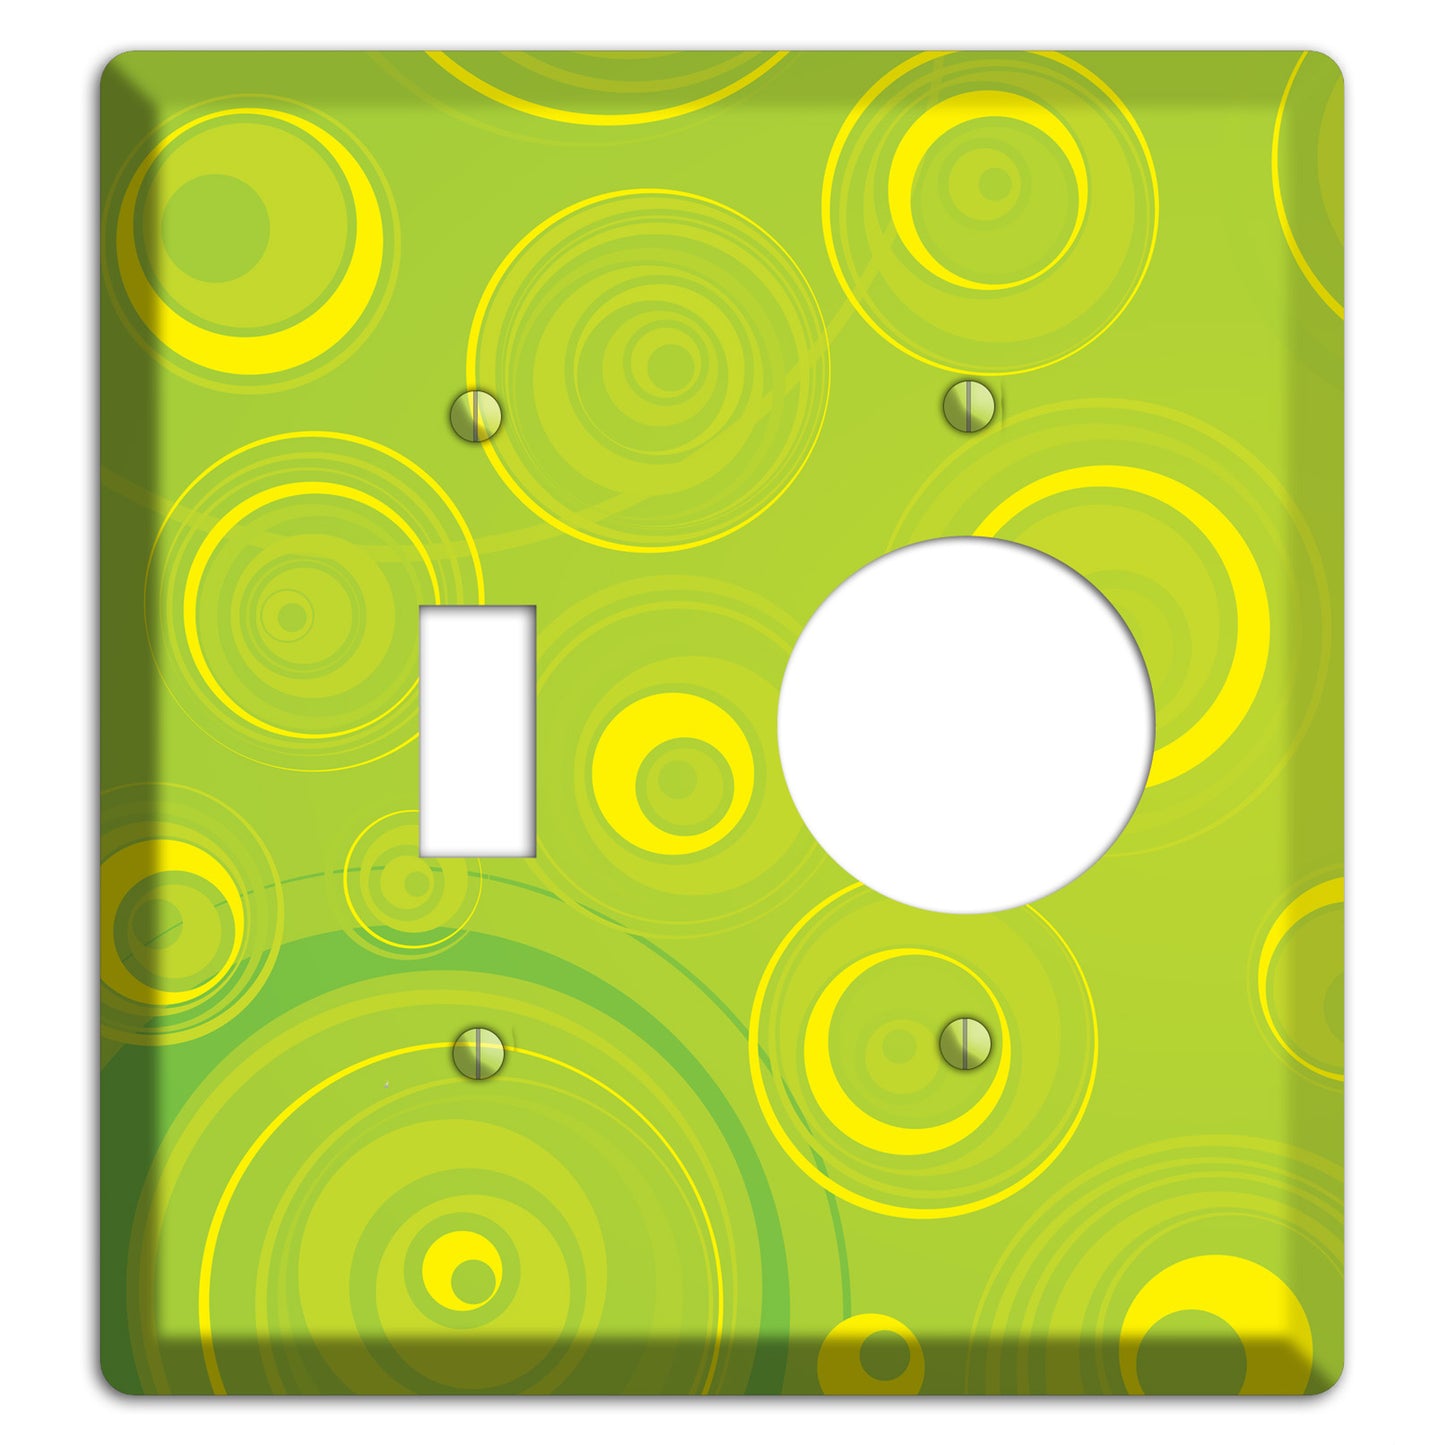 Green-yellow Circles Toggle / Receptacle Wallplate